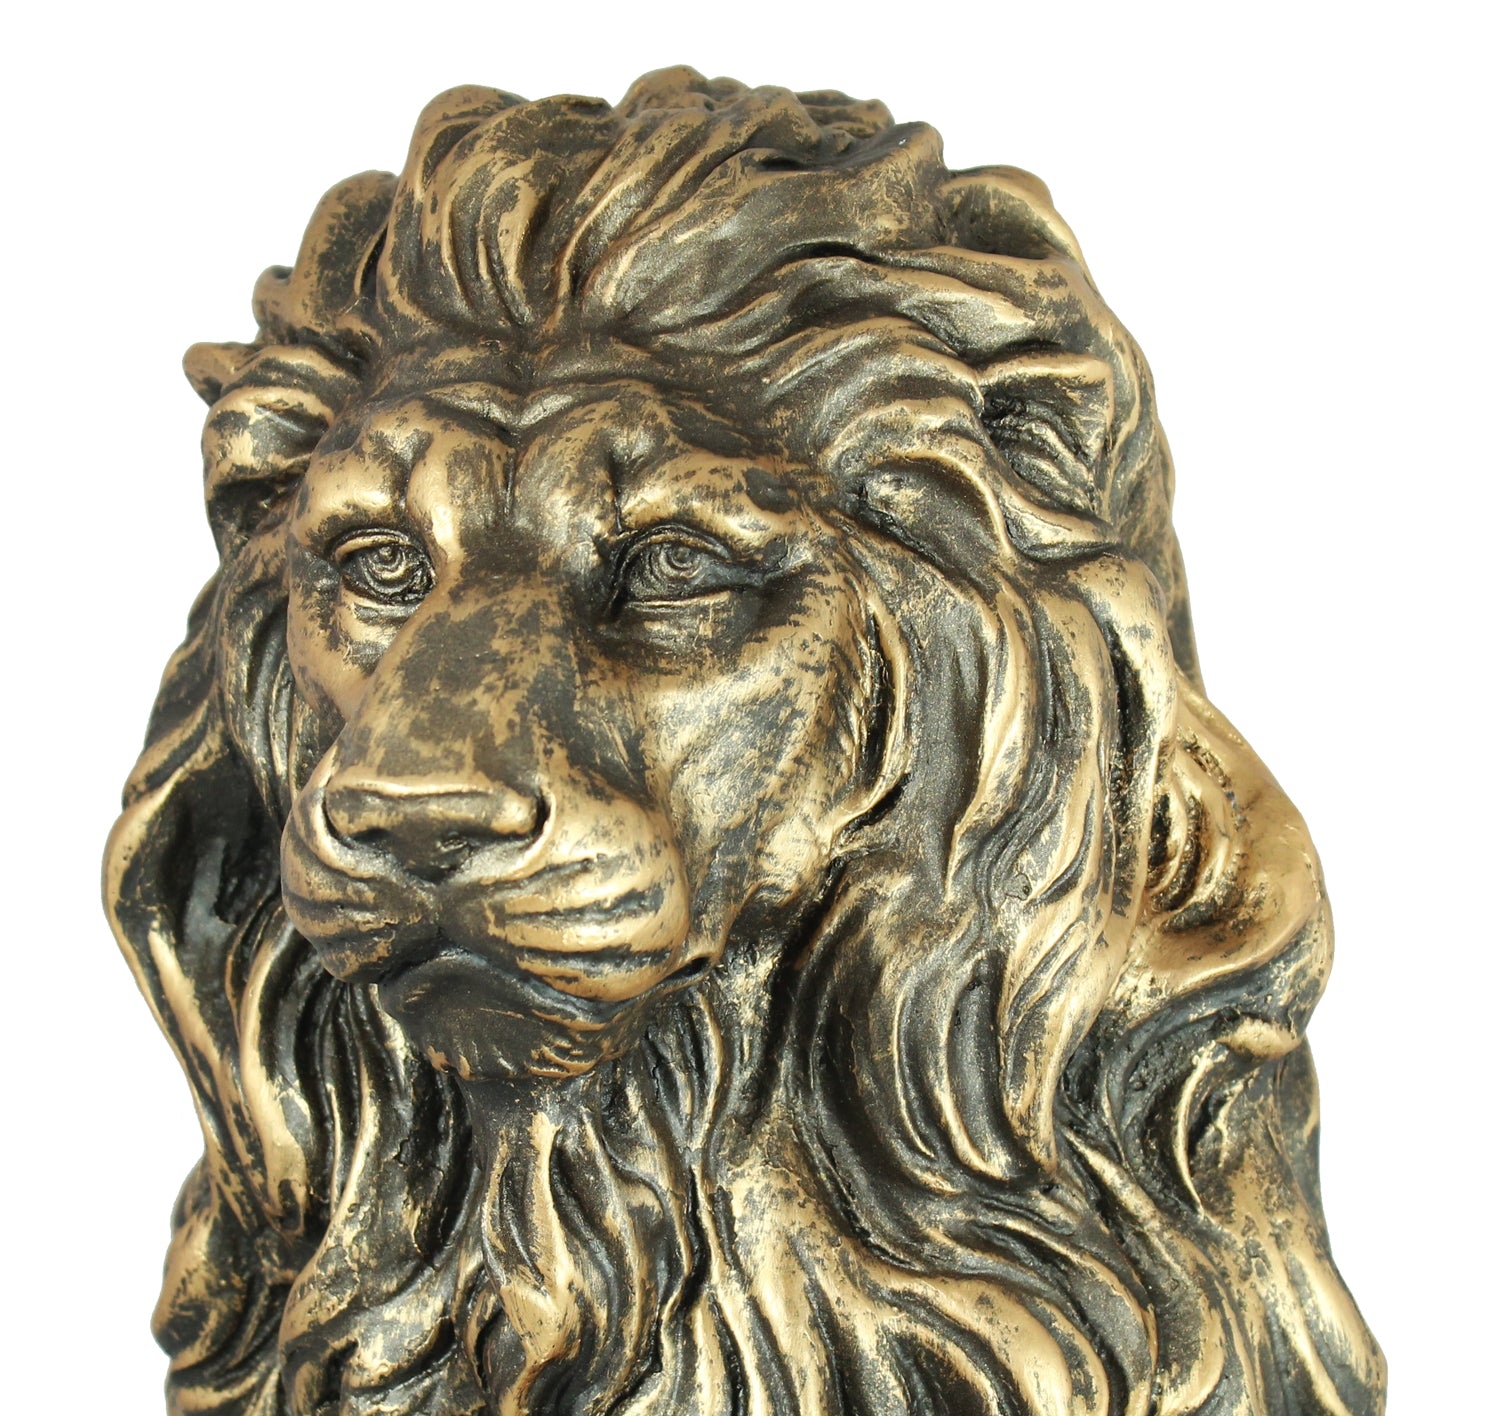 Löwe Figur Gartenfigur Löwe Löwenfigur für den Garten in bronze Optik